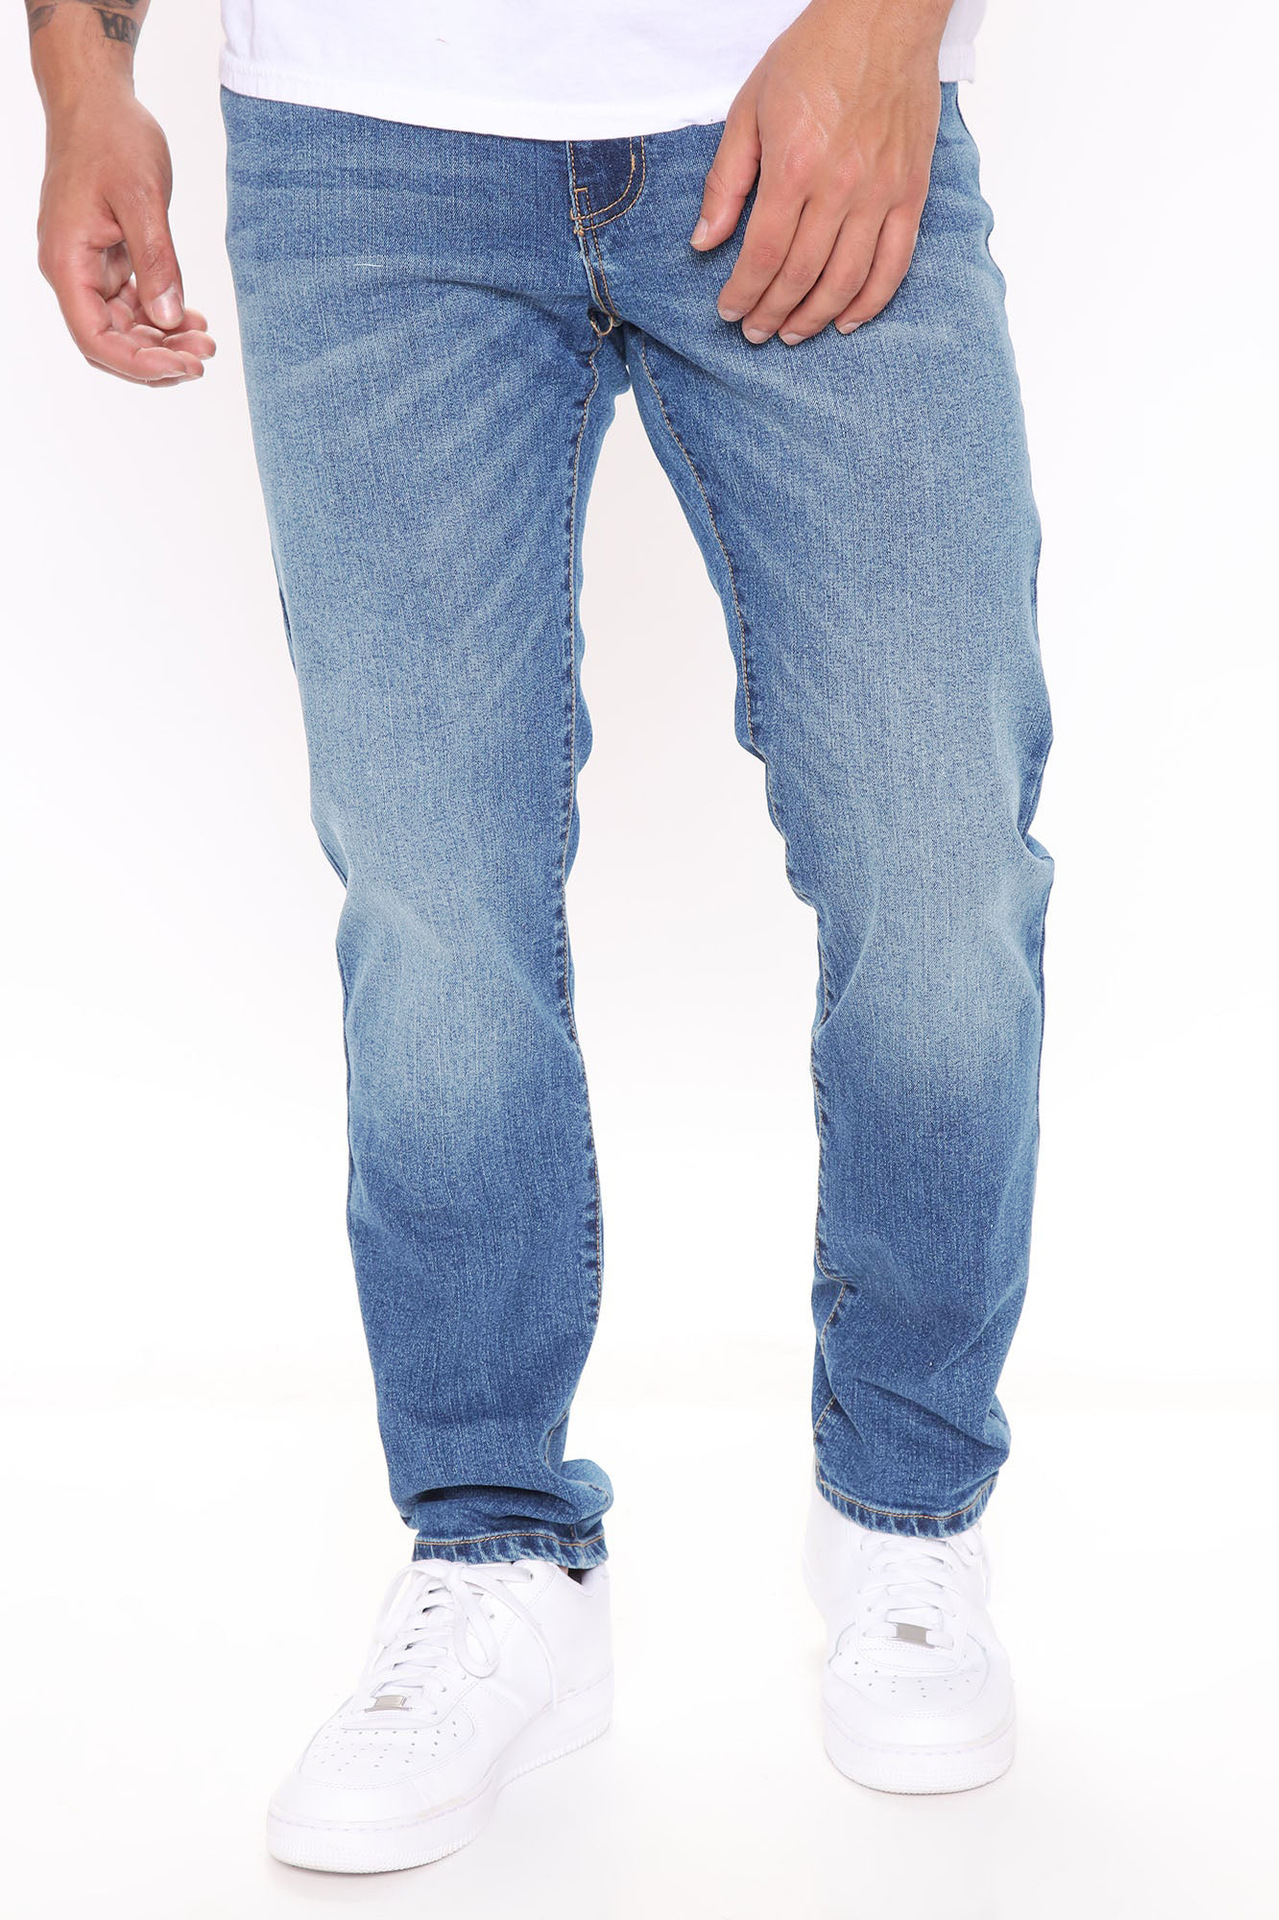 Antony Morato Men's Jeans ⋆ Carrot, Slim, Skinny, Super Skinny and Tapered